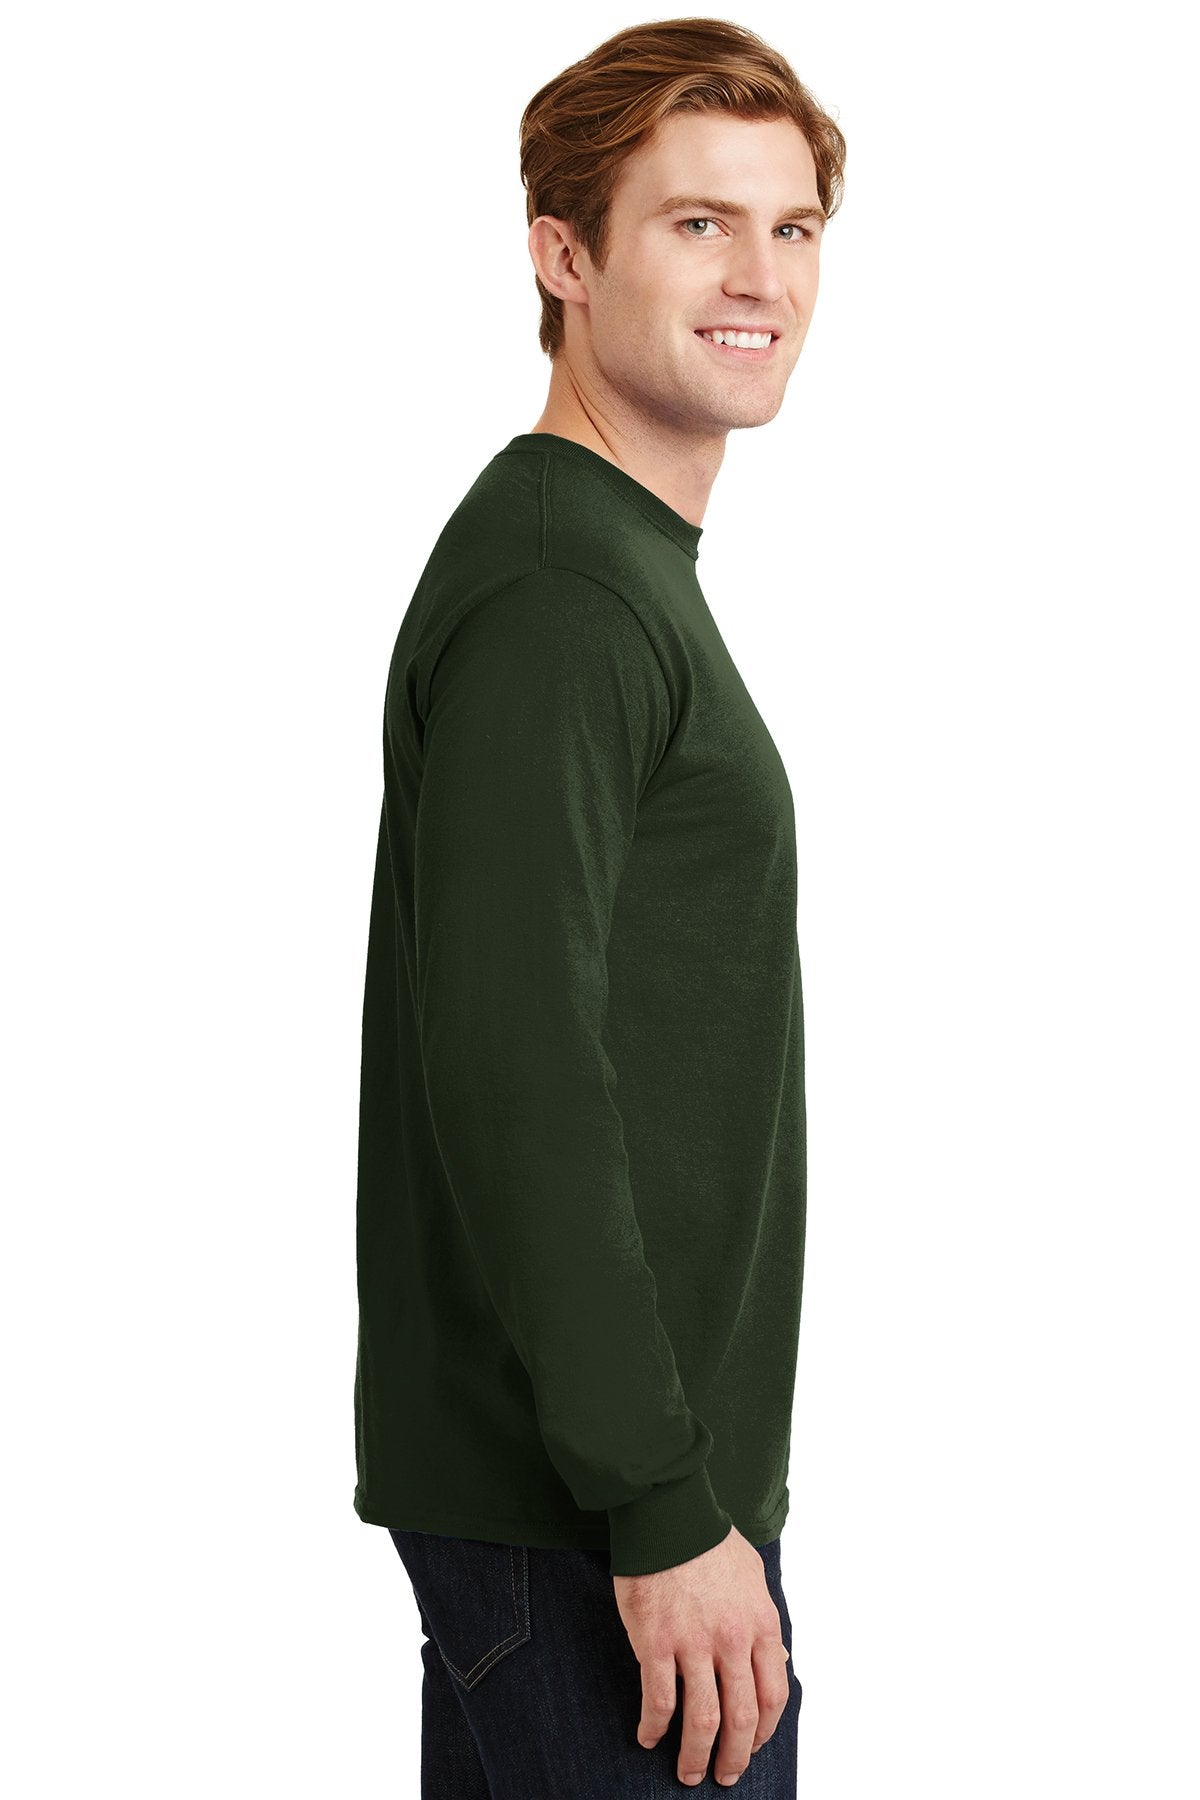 gildan dryblend cotton poly long sleeve t shirt 8400 forest green